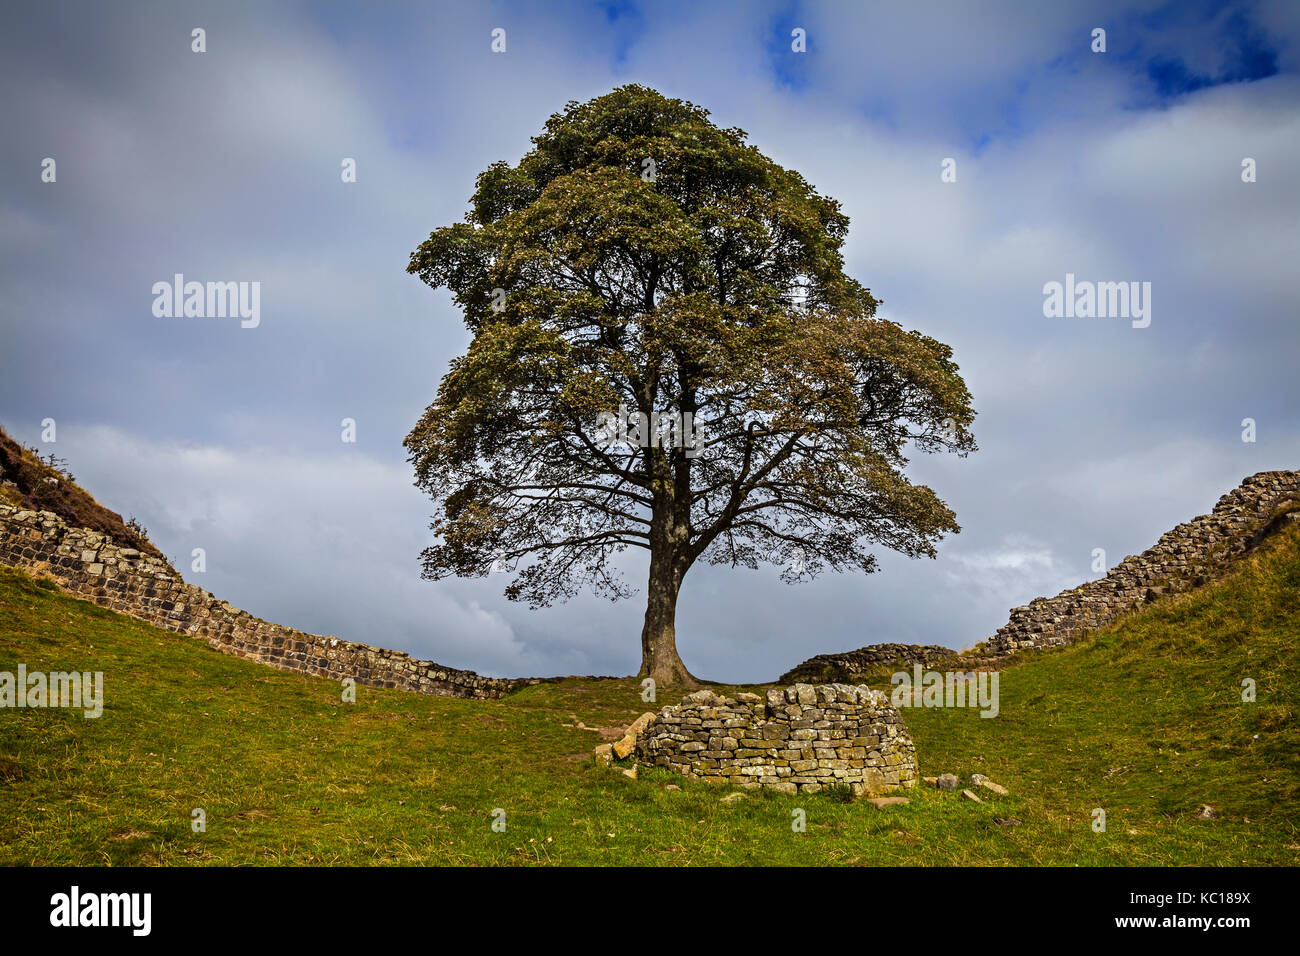 Il divario di Platano albero a winshields sul vallo di Adriano,romano del II secolo fortificazione difensiva, Northumberland, Inghilterra. Foto Stock